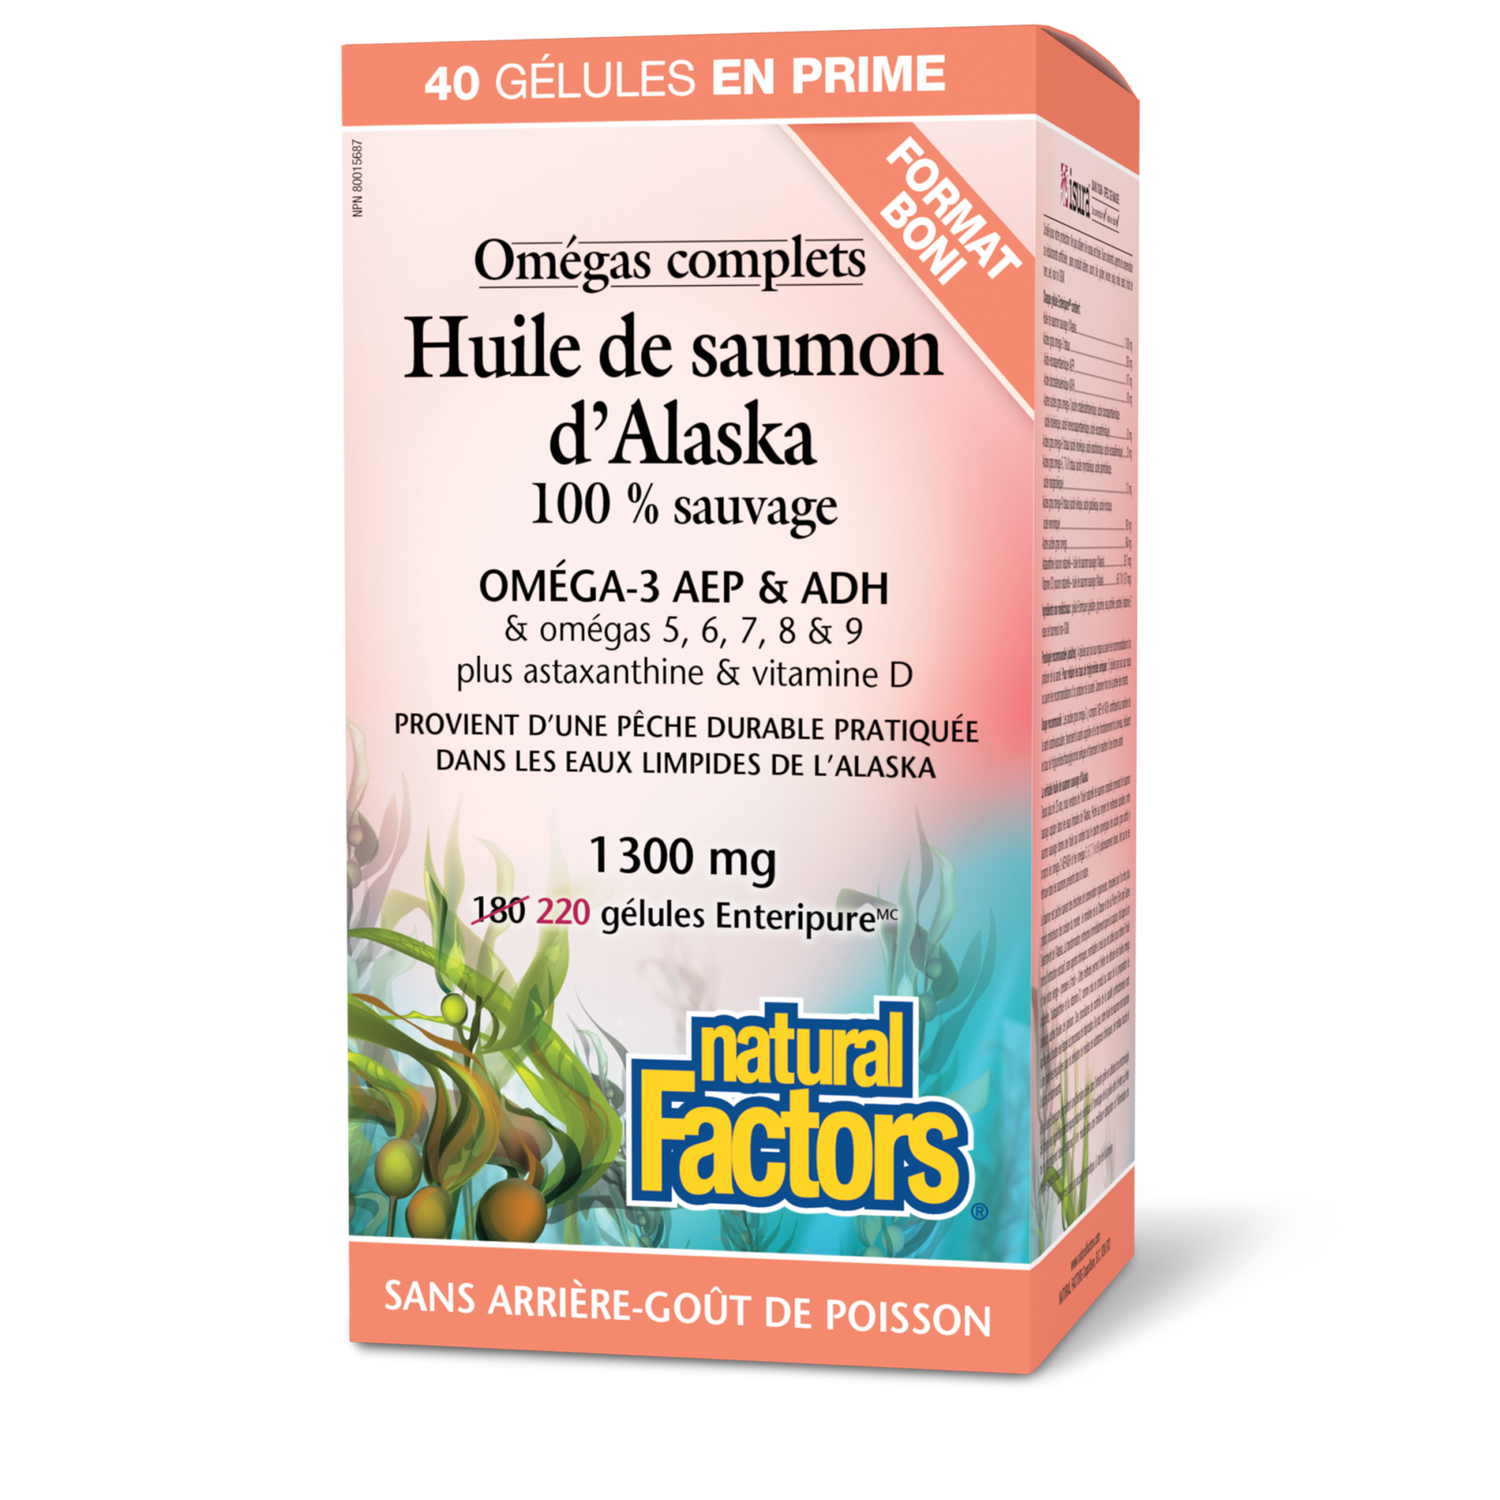 Huile de saumon d’Alaska 100 % sauvage 1 300 mg, Omégas complets, Natural Factors|v|image|8266